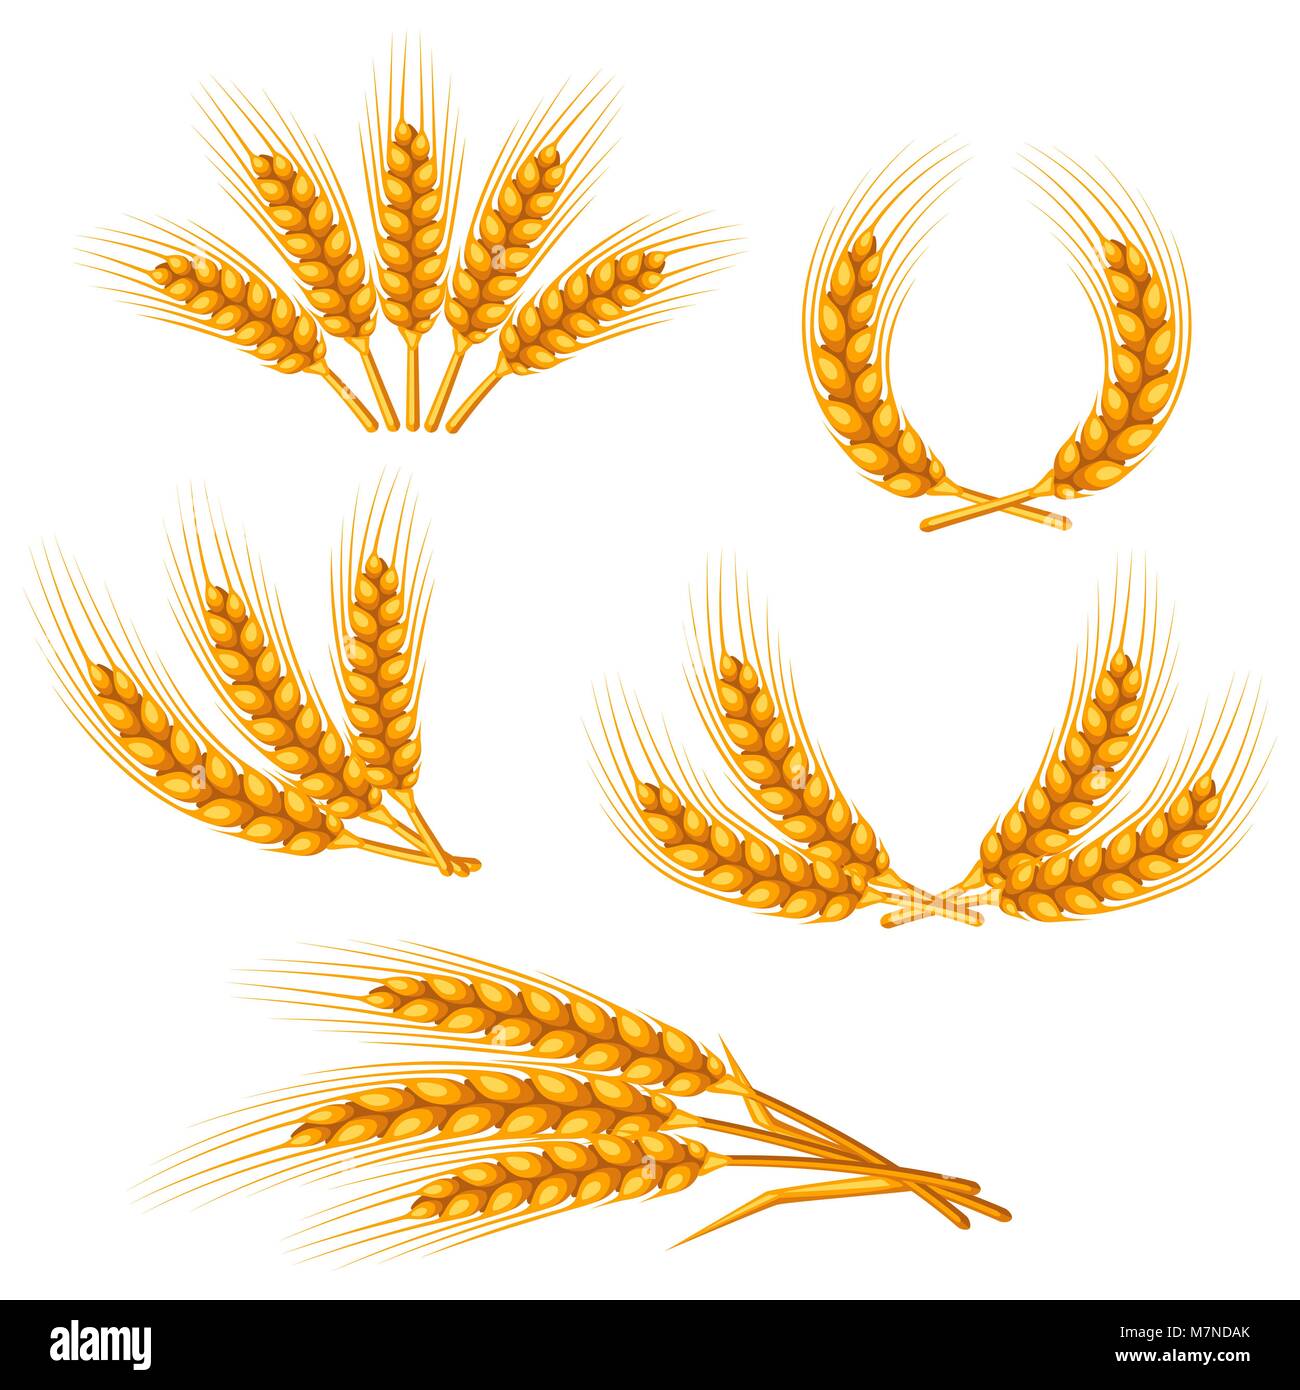 Éléments de design avec le blé. Droit agricole Golden Ears naturelles d'orge ou de seigle. Pour la décoration d'objets d'emballage, des étiquettes de bière pain Illustration de Vecteur